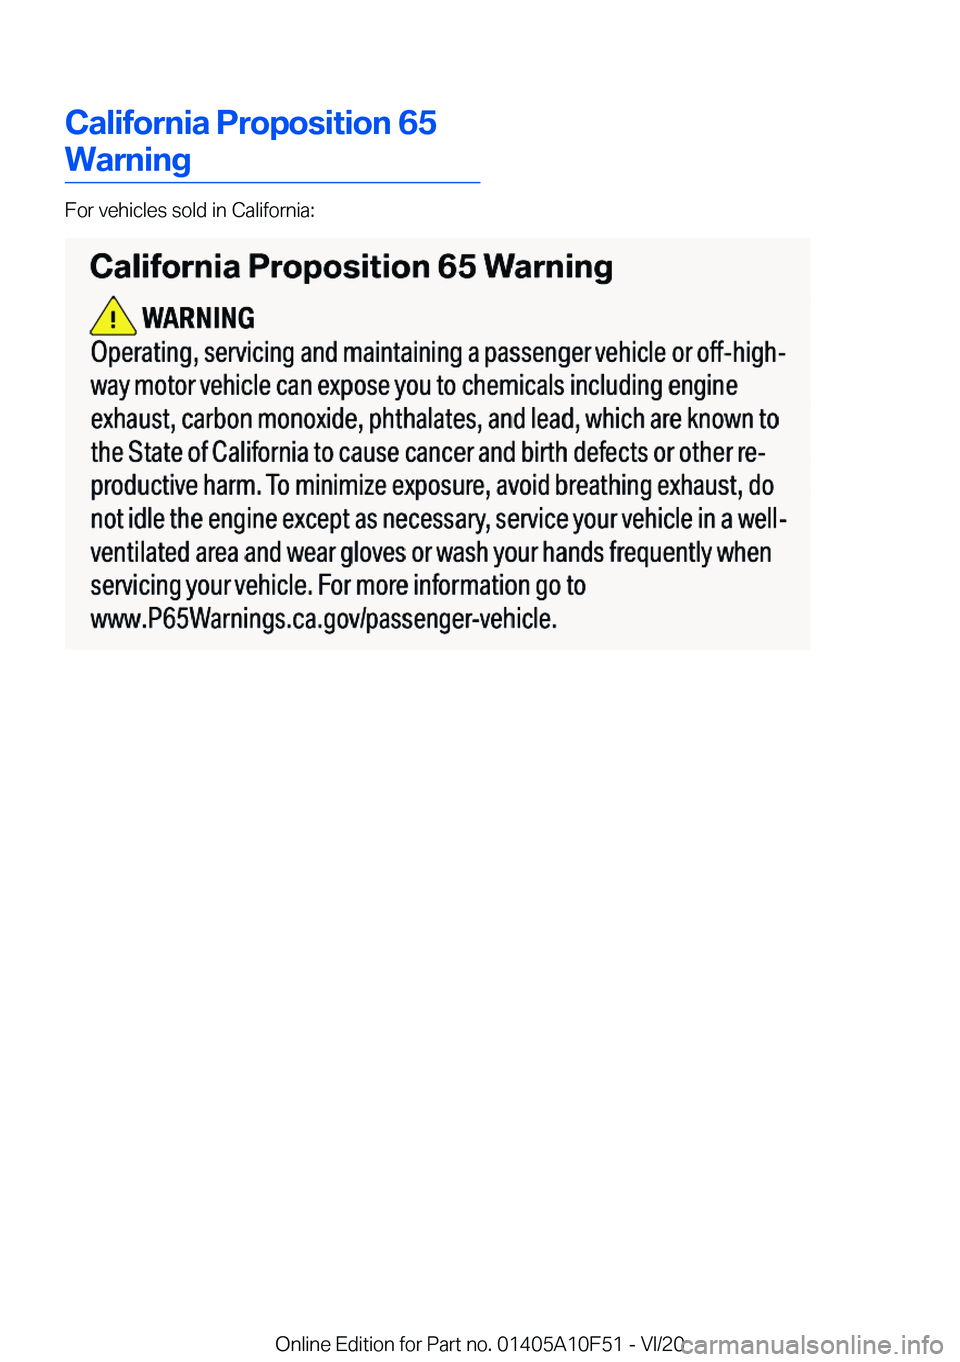 BMW X4 2021  Owners Manual �C�a�l�i�f�o�r�n�i�a��P�r�o�p�o�s�i�t�i�o�n��6�5
�W�a�r�n�i�n�g
�F�o�r��v�e�h�i�c�l�e�s��s�o�l�d��i�n��C�a�l�i�f�o�r�n�i�a�:
�O�n�l�i�n�e��E�d�i�t�i�o�n��f�o�r��P�a�r�t��n�o�.��0�1�4�0�5�A�